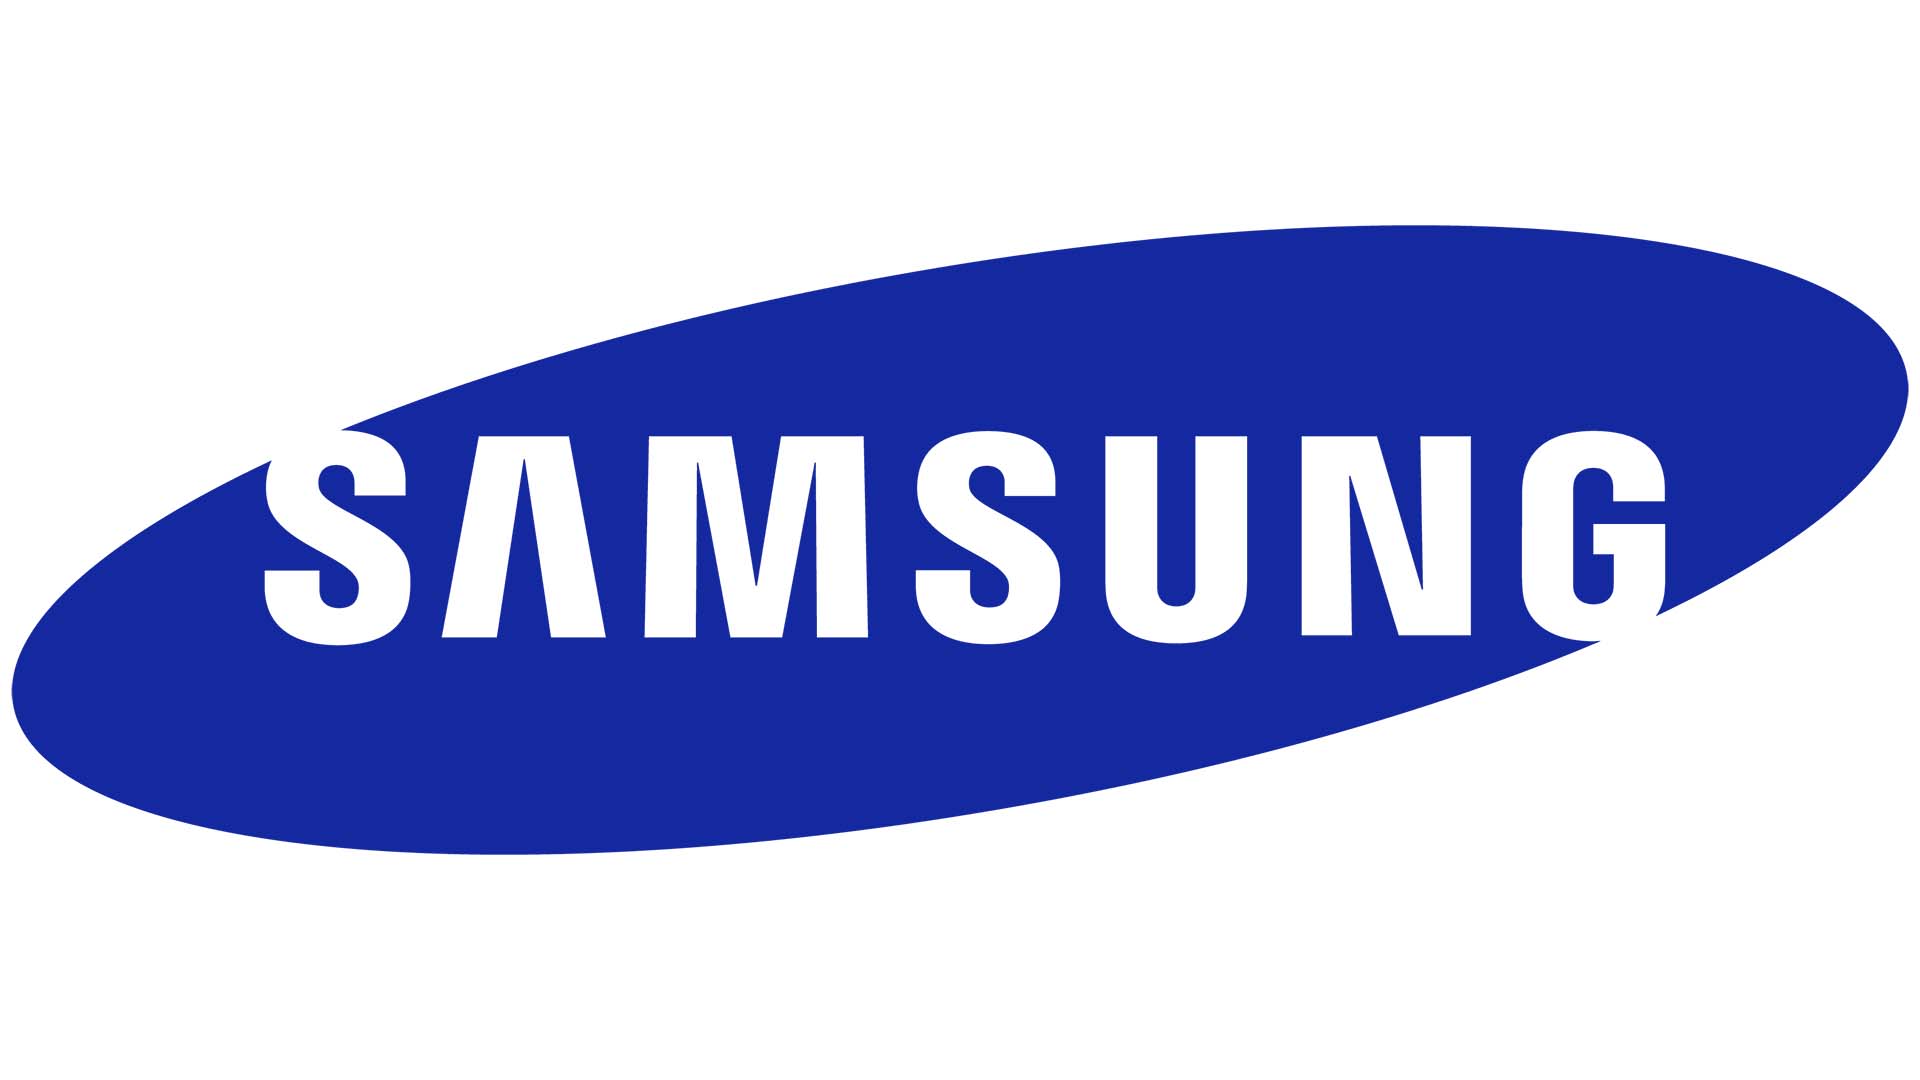 Samsung 2018 Logo - Samsung Logo 3 Mobile Destination